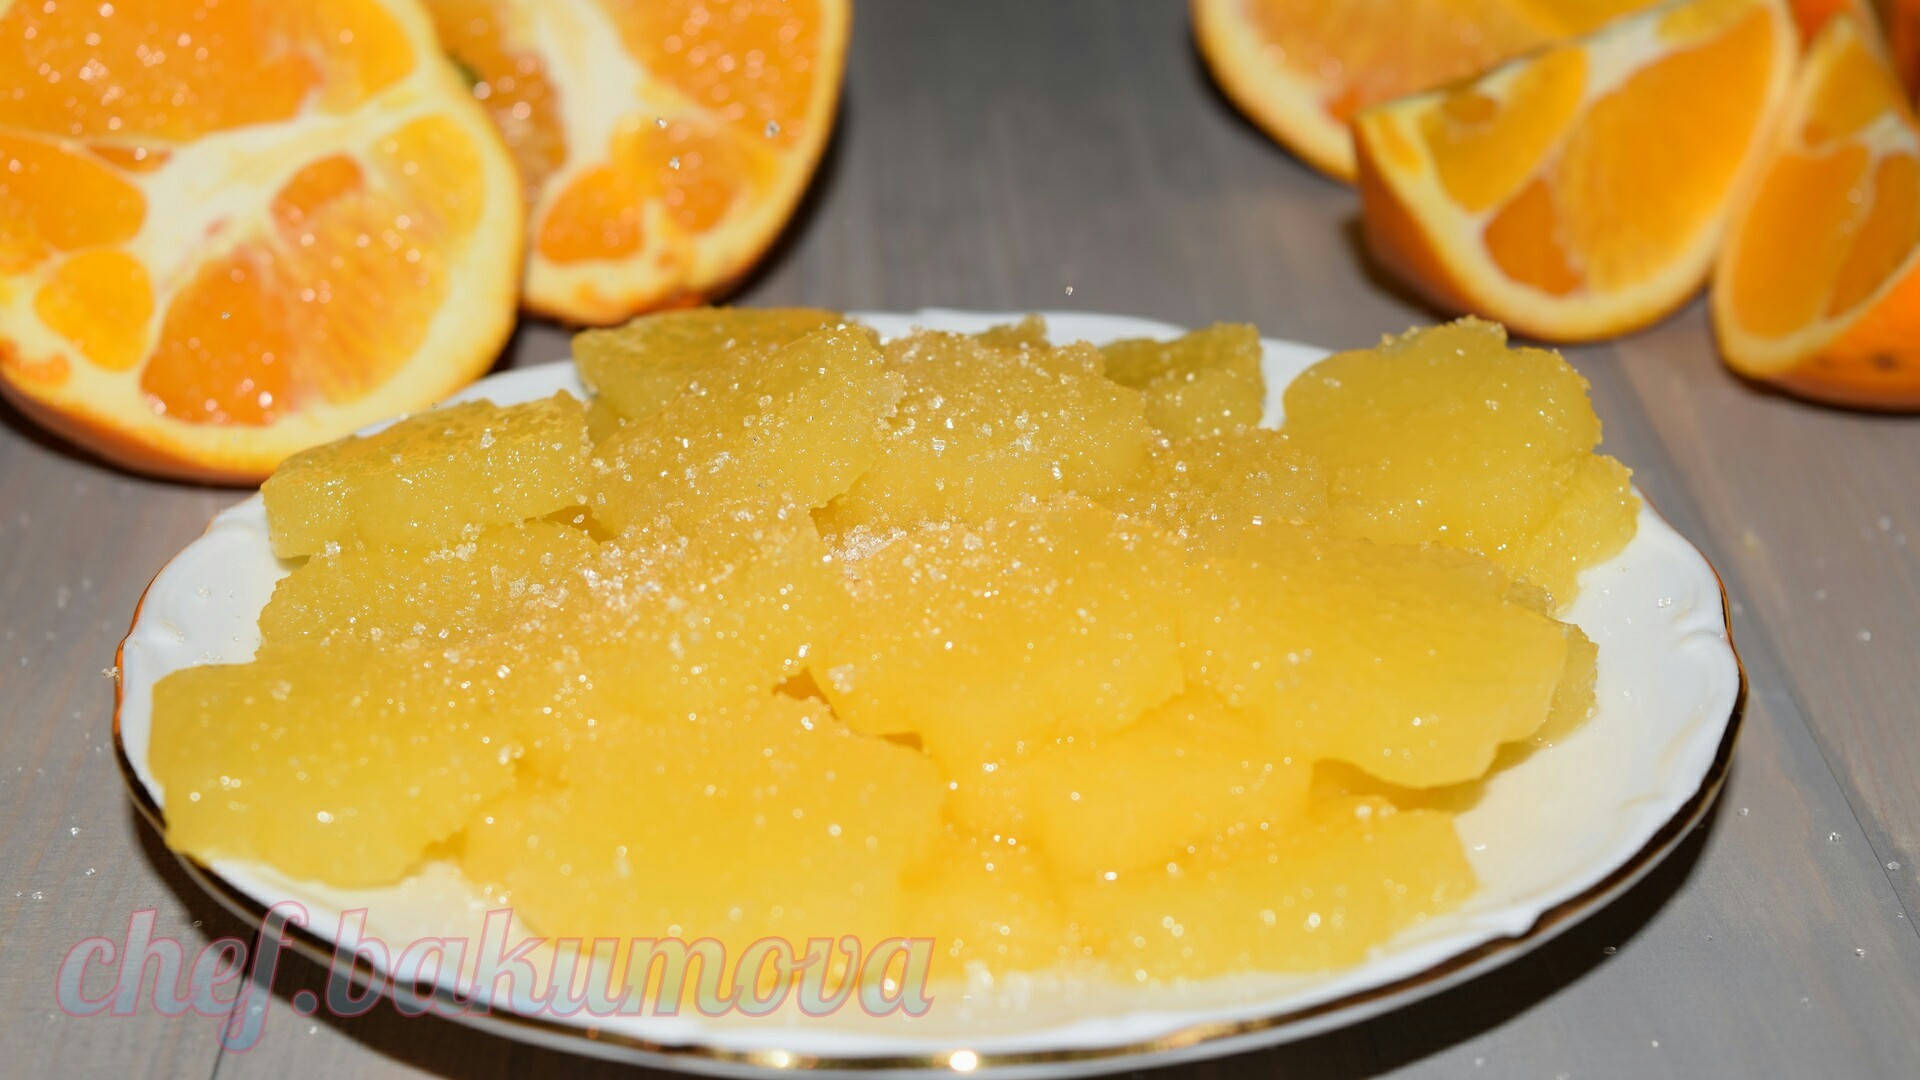 Фото к рецепту: Домашний апельсиновый мармелад на агар-агаре. десерт в пост. видео